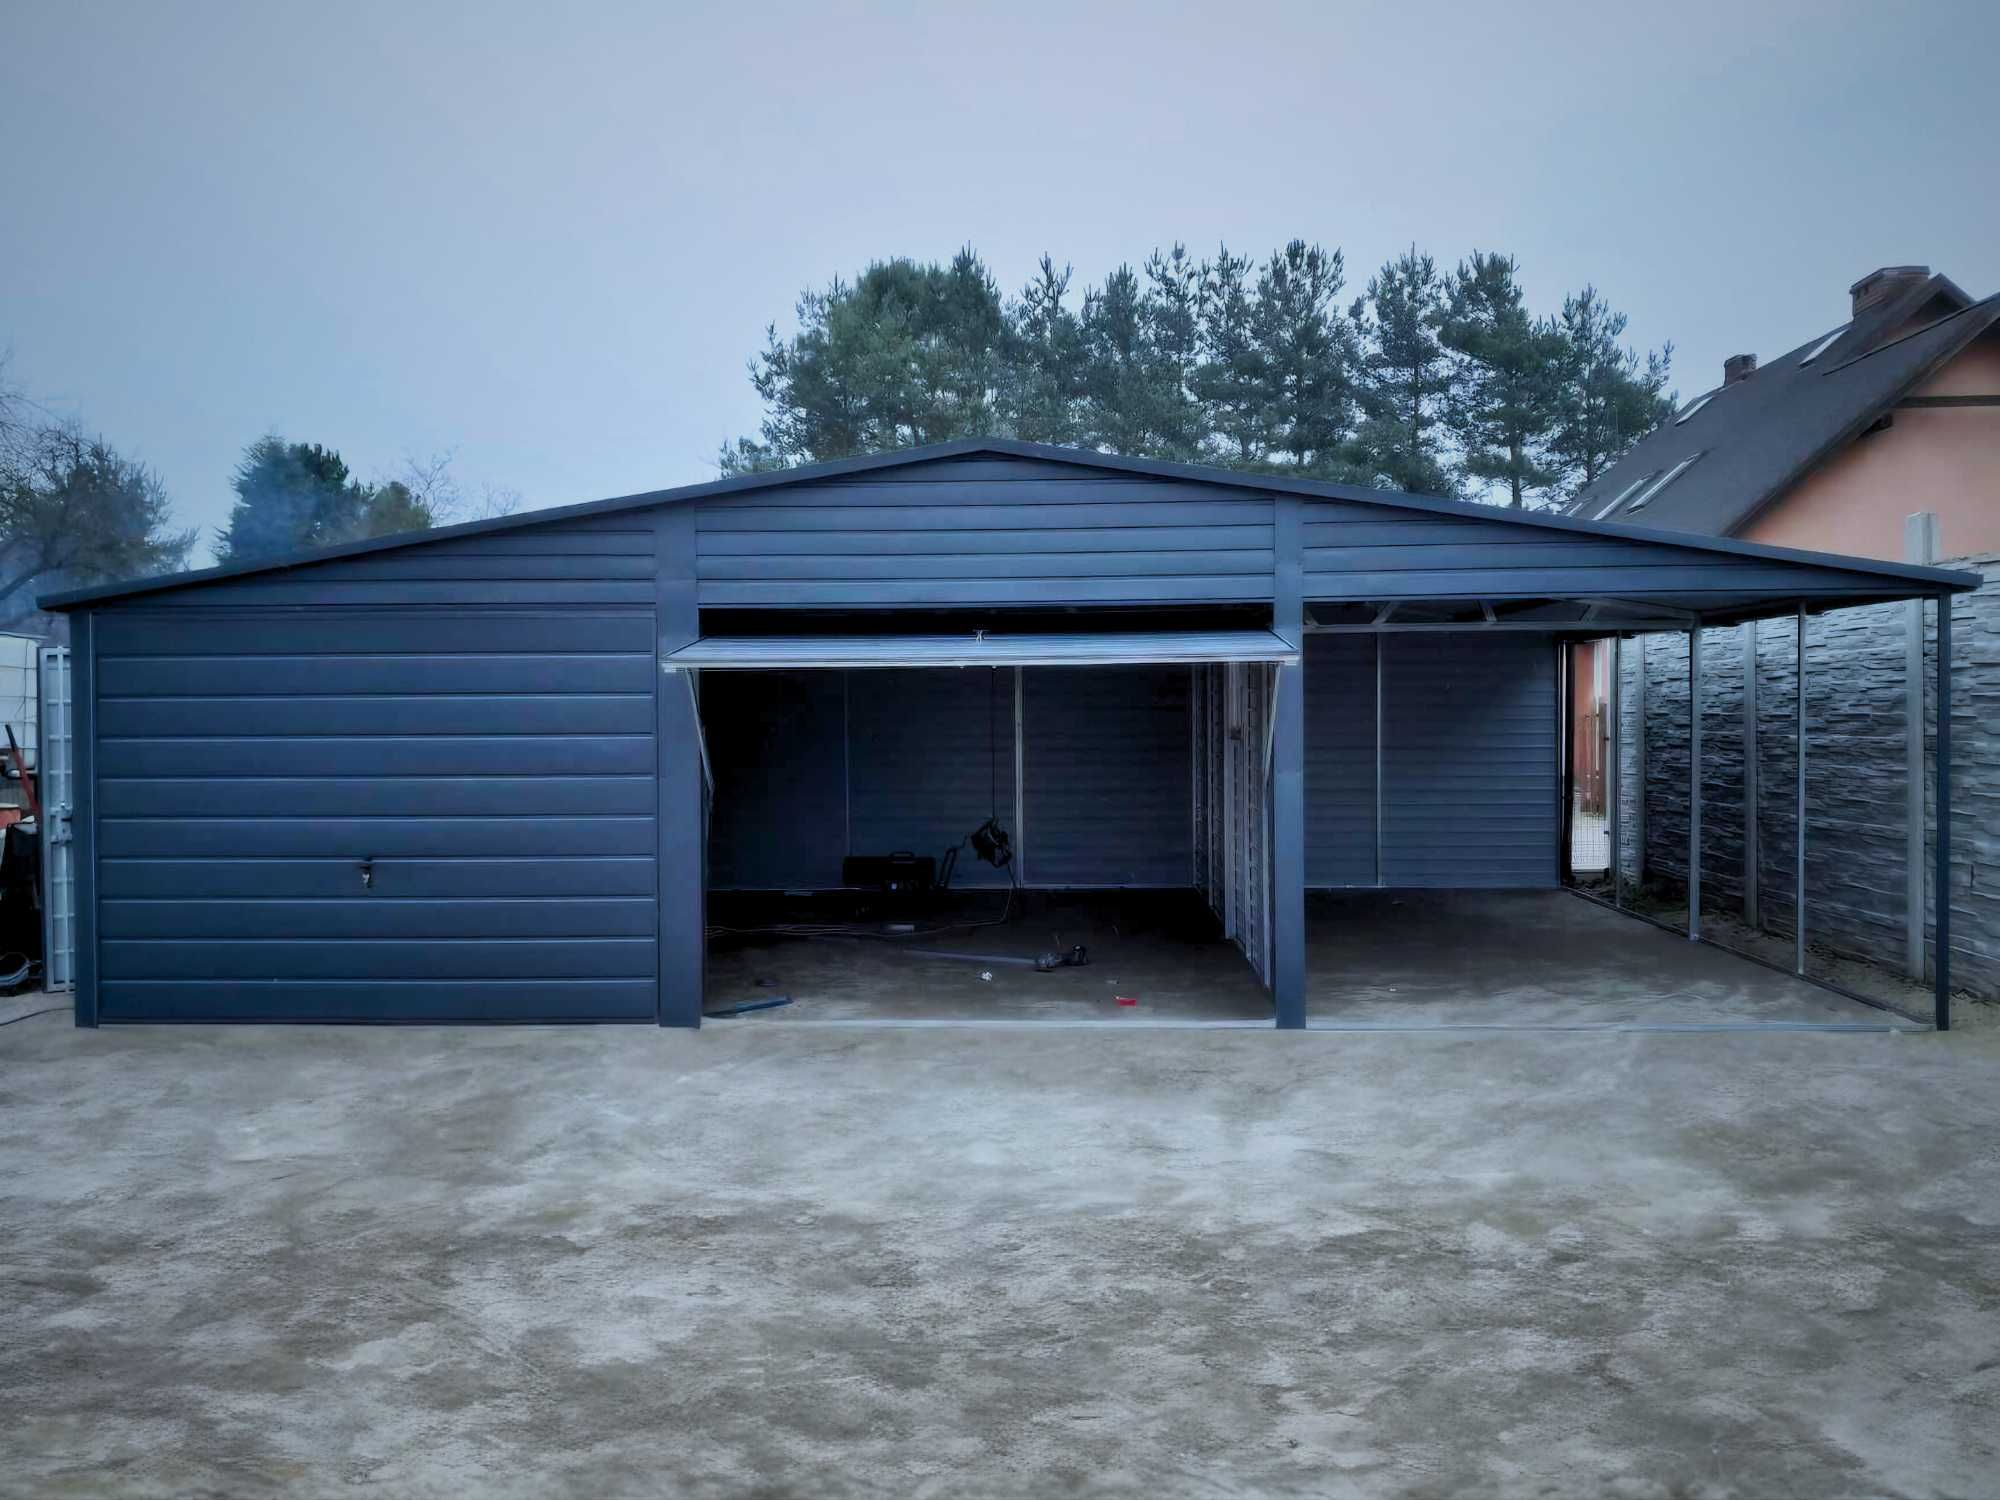 Garaż blaszany 9x5m schowek domek na budowe (dowolne wymiary)